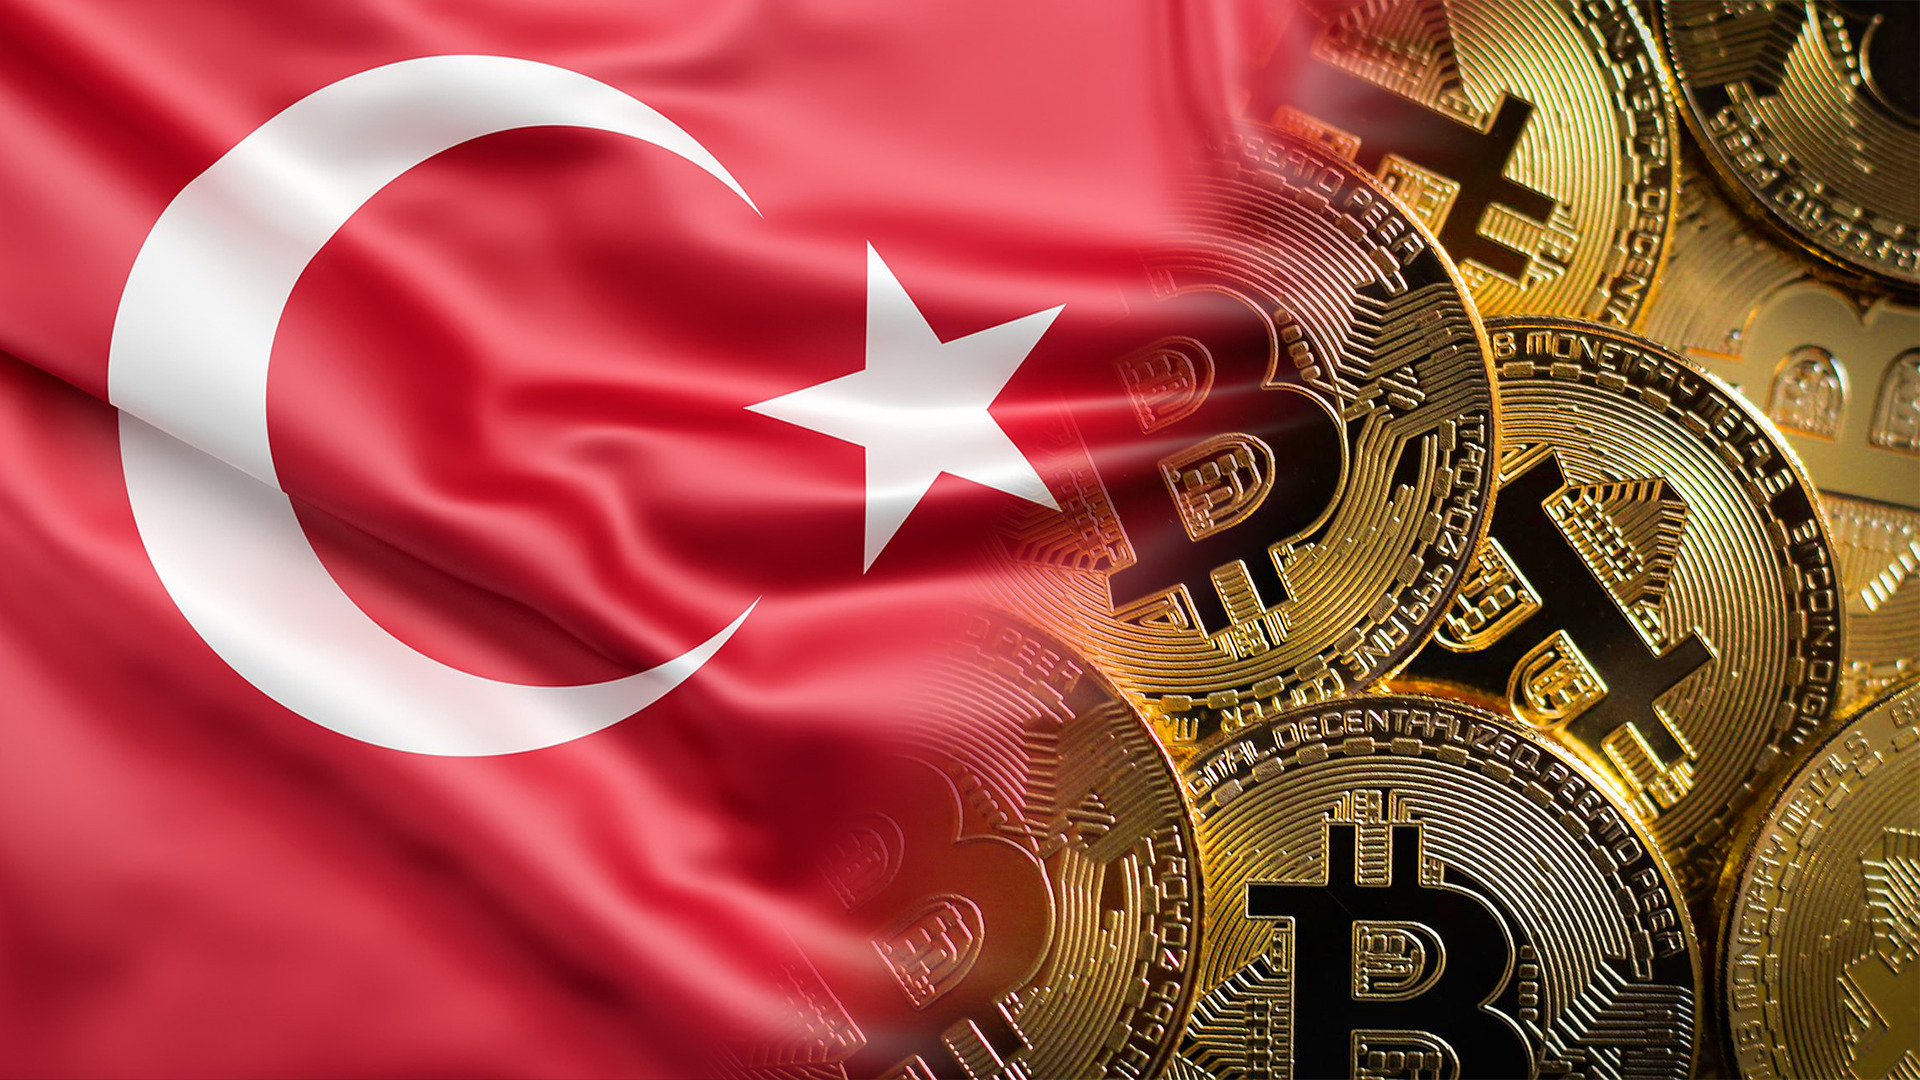 ทนไม่ไหว! ชาวตุรกีหันหน้าหา Bitcoin หลังเงินเฟ้อพุ่งสูงสุดในรอบ 24 ปี